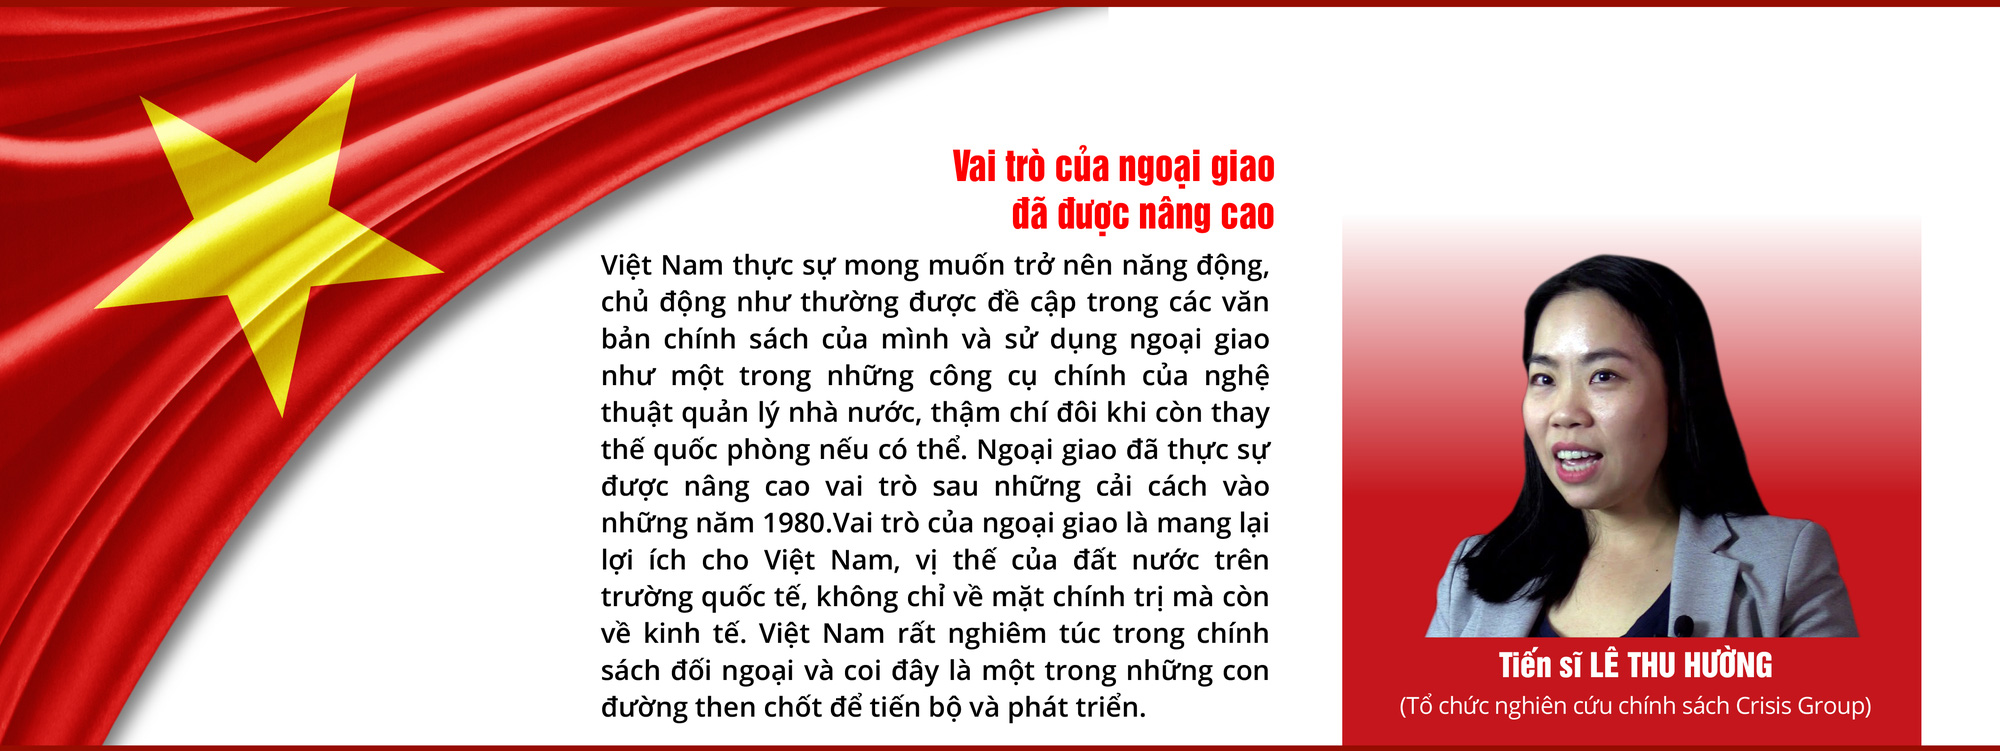 Nâng cao vị thế Việt Nam giữa thế giới biến động - Ảnh 5.